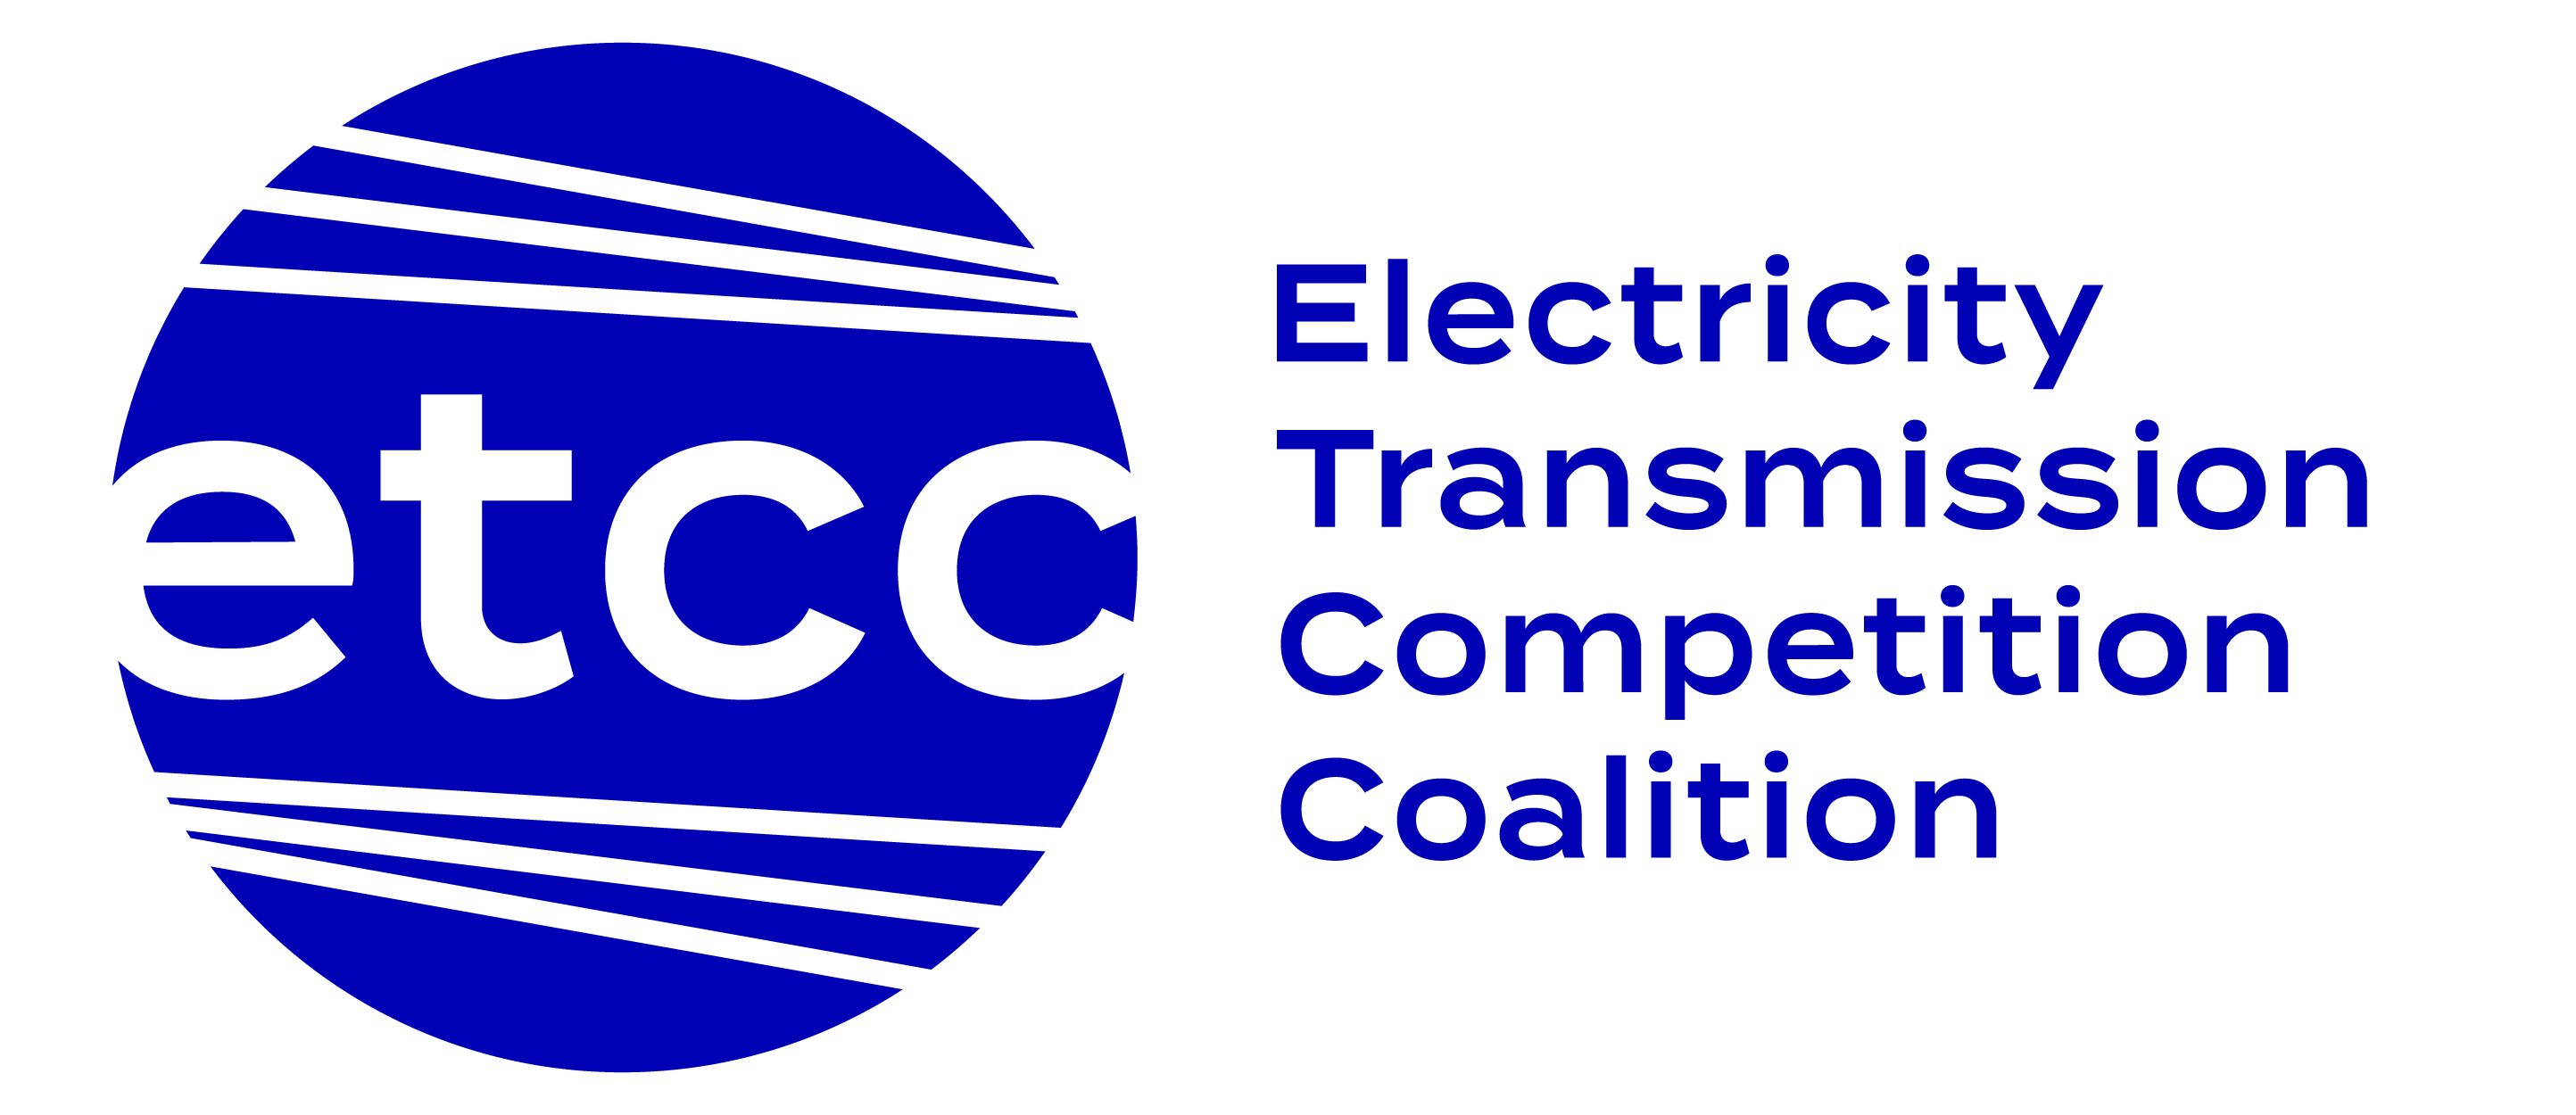 ETCC_logo-name-fc_logo-name-fc